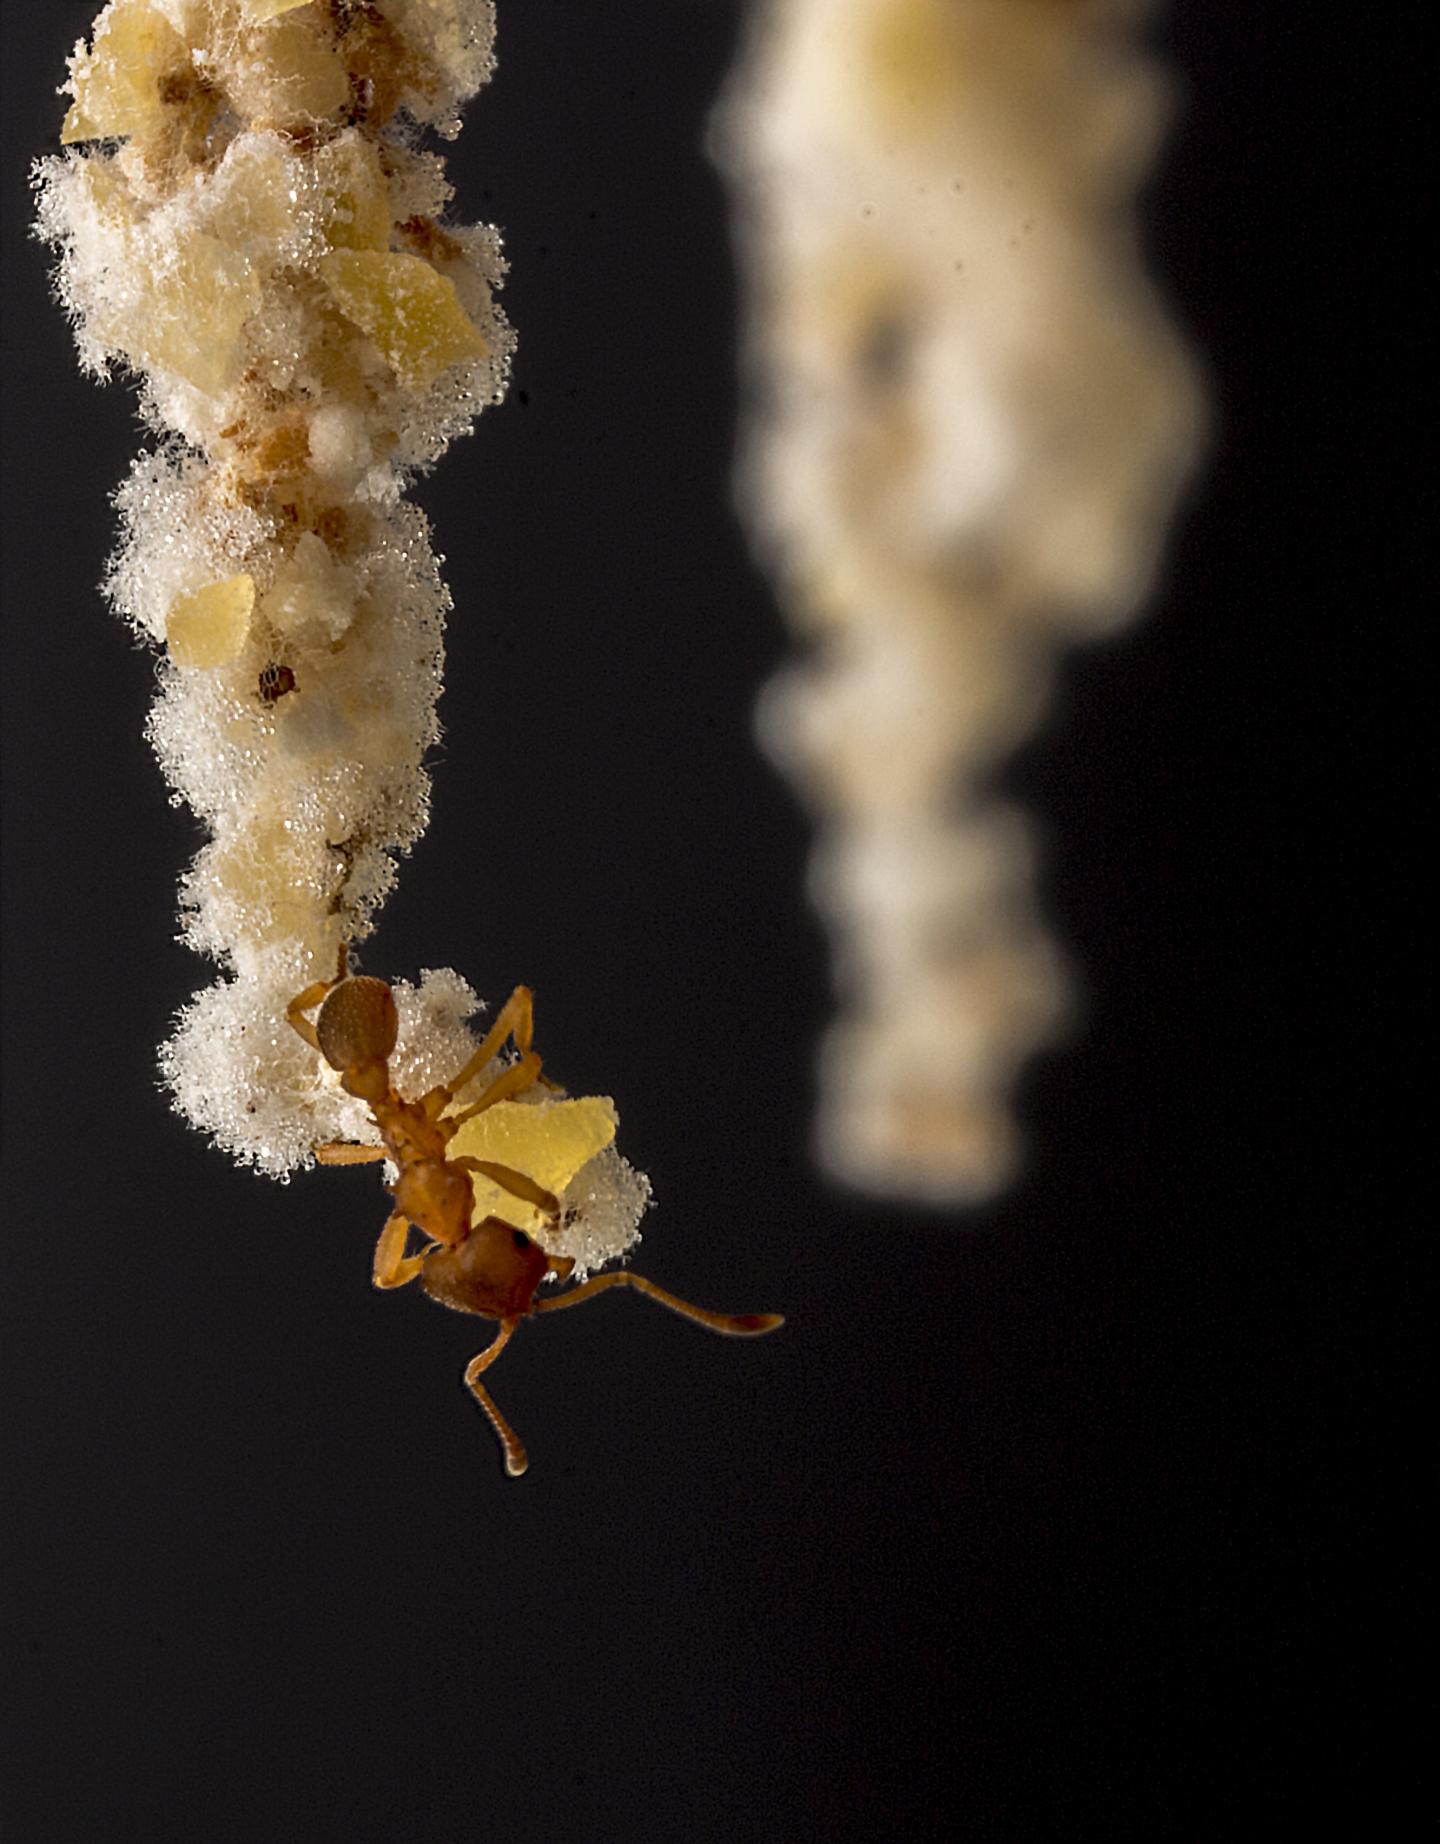 The Ant, <i>Mycocepurus smithii</i>